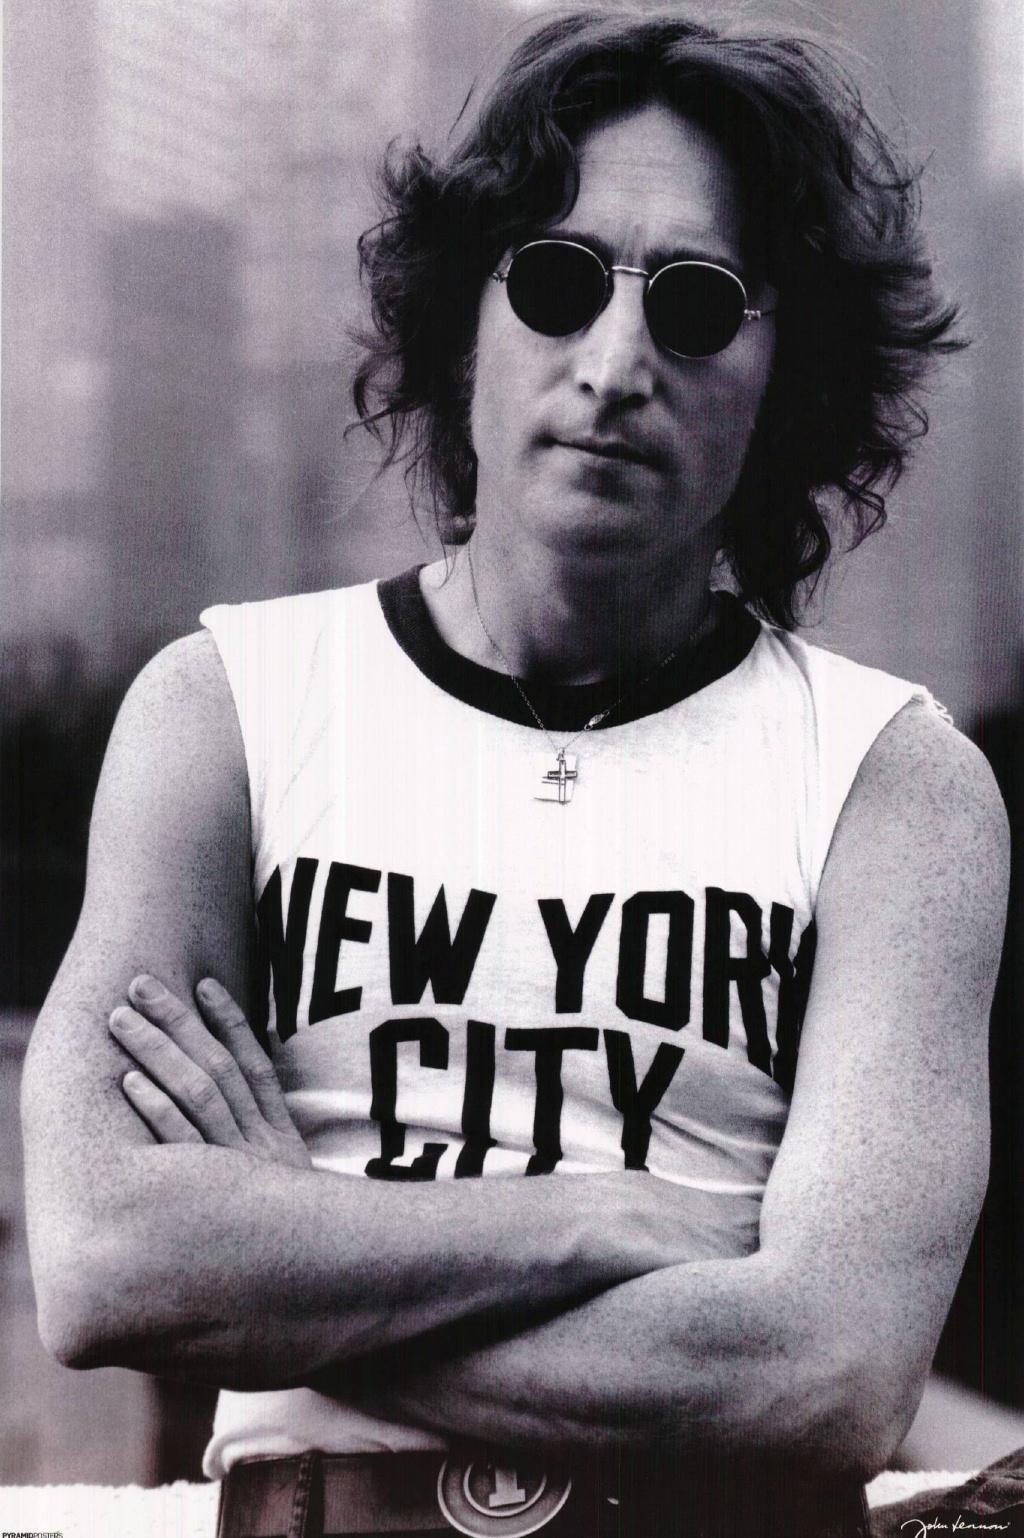 John Lennon New York City Music Art Poster Reprint 24 x 36